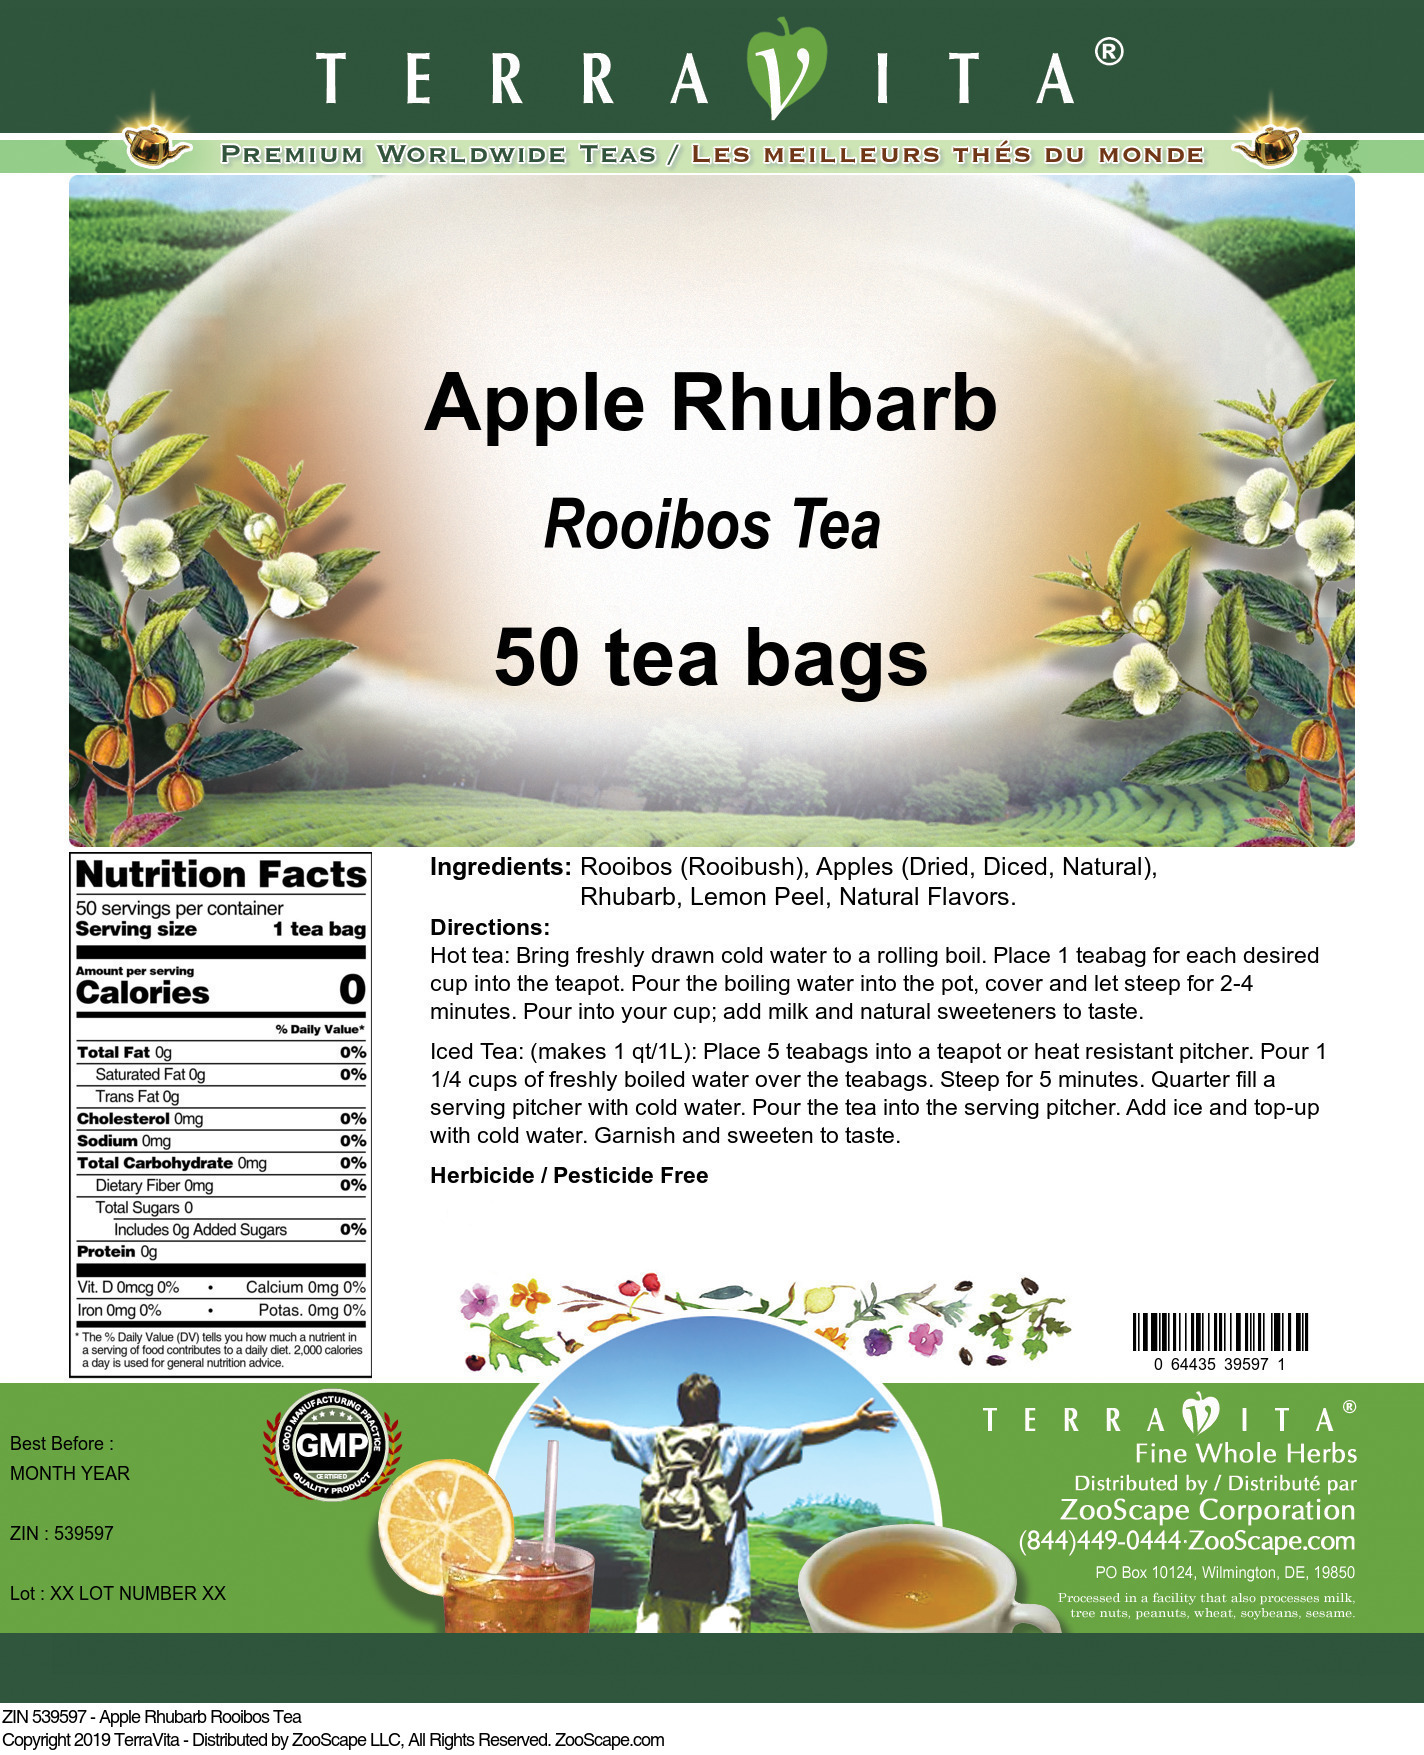 Apple Rhubarb Rooibos Tea - Label